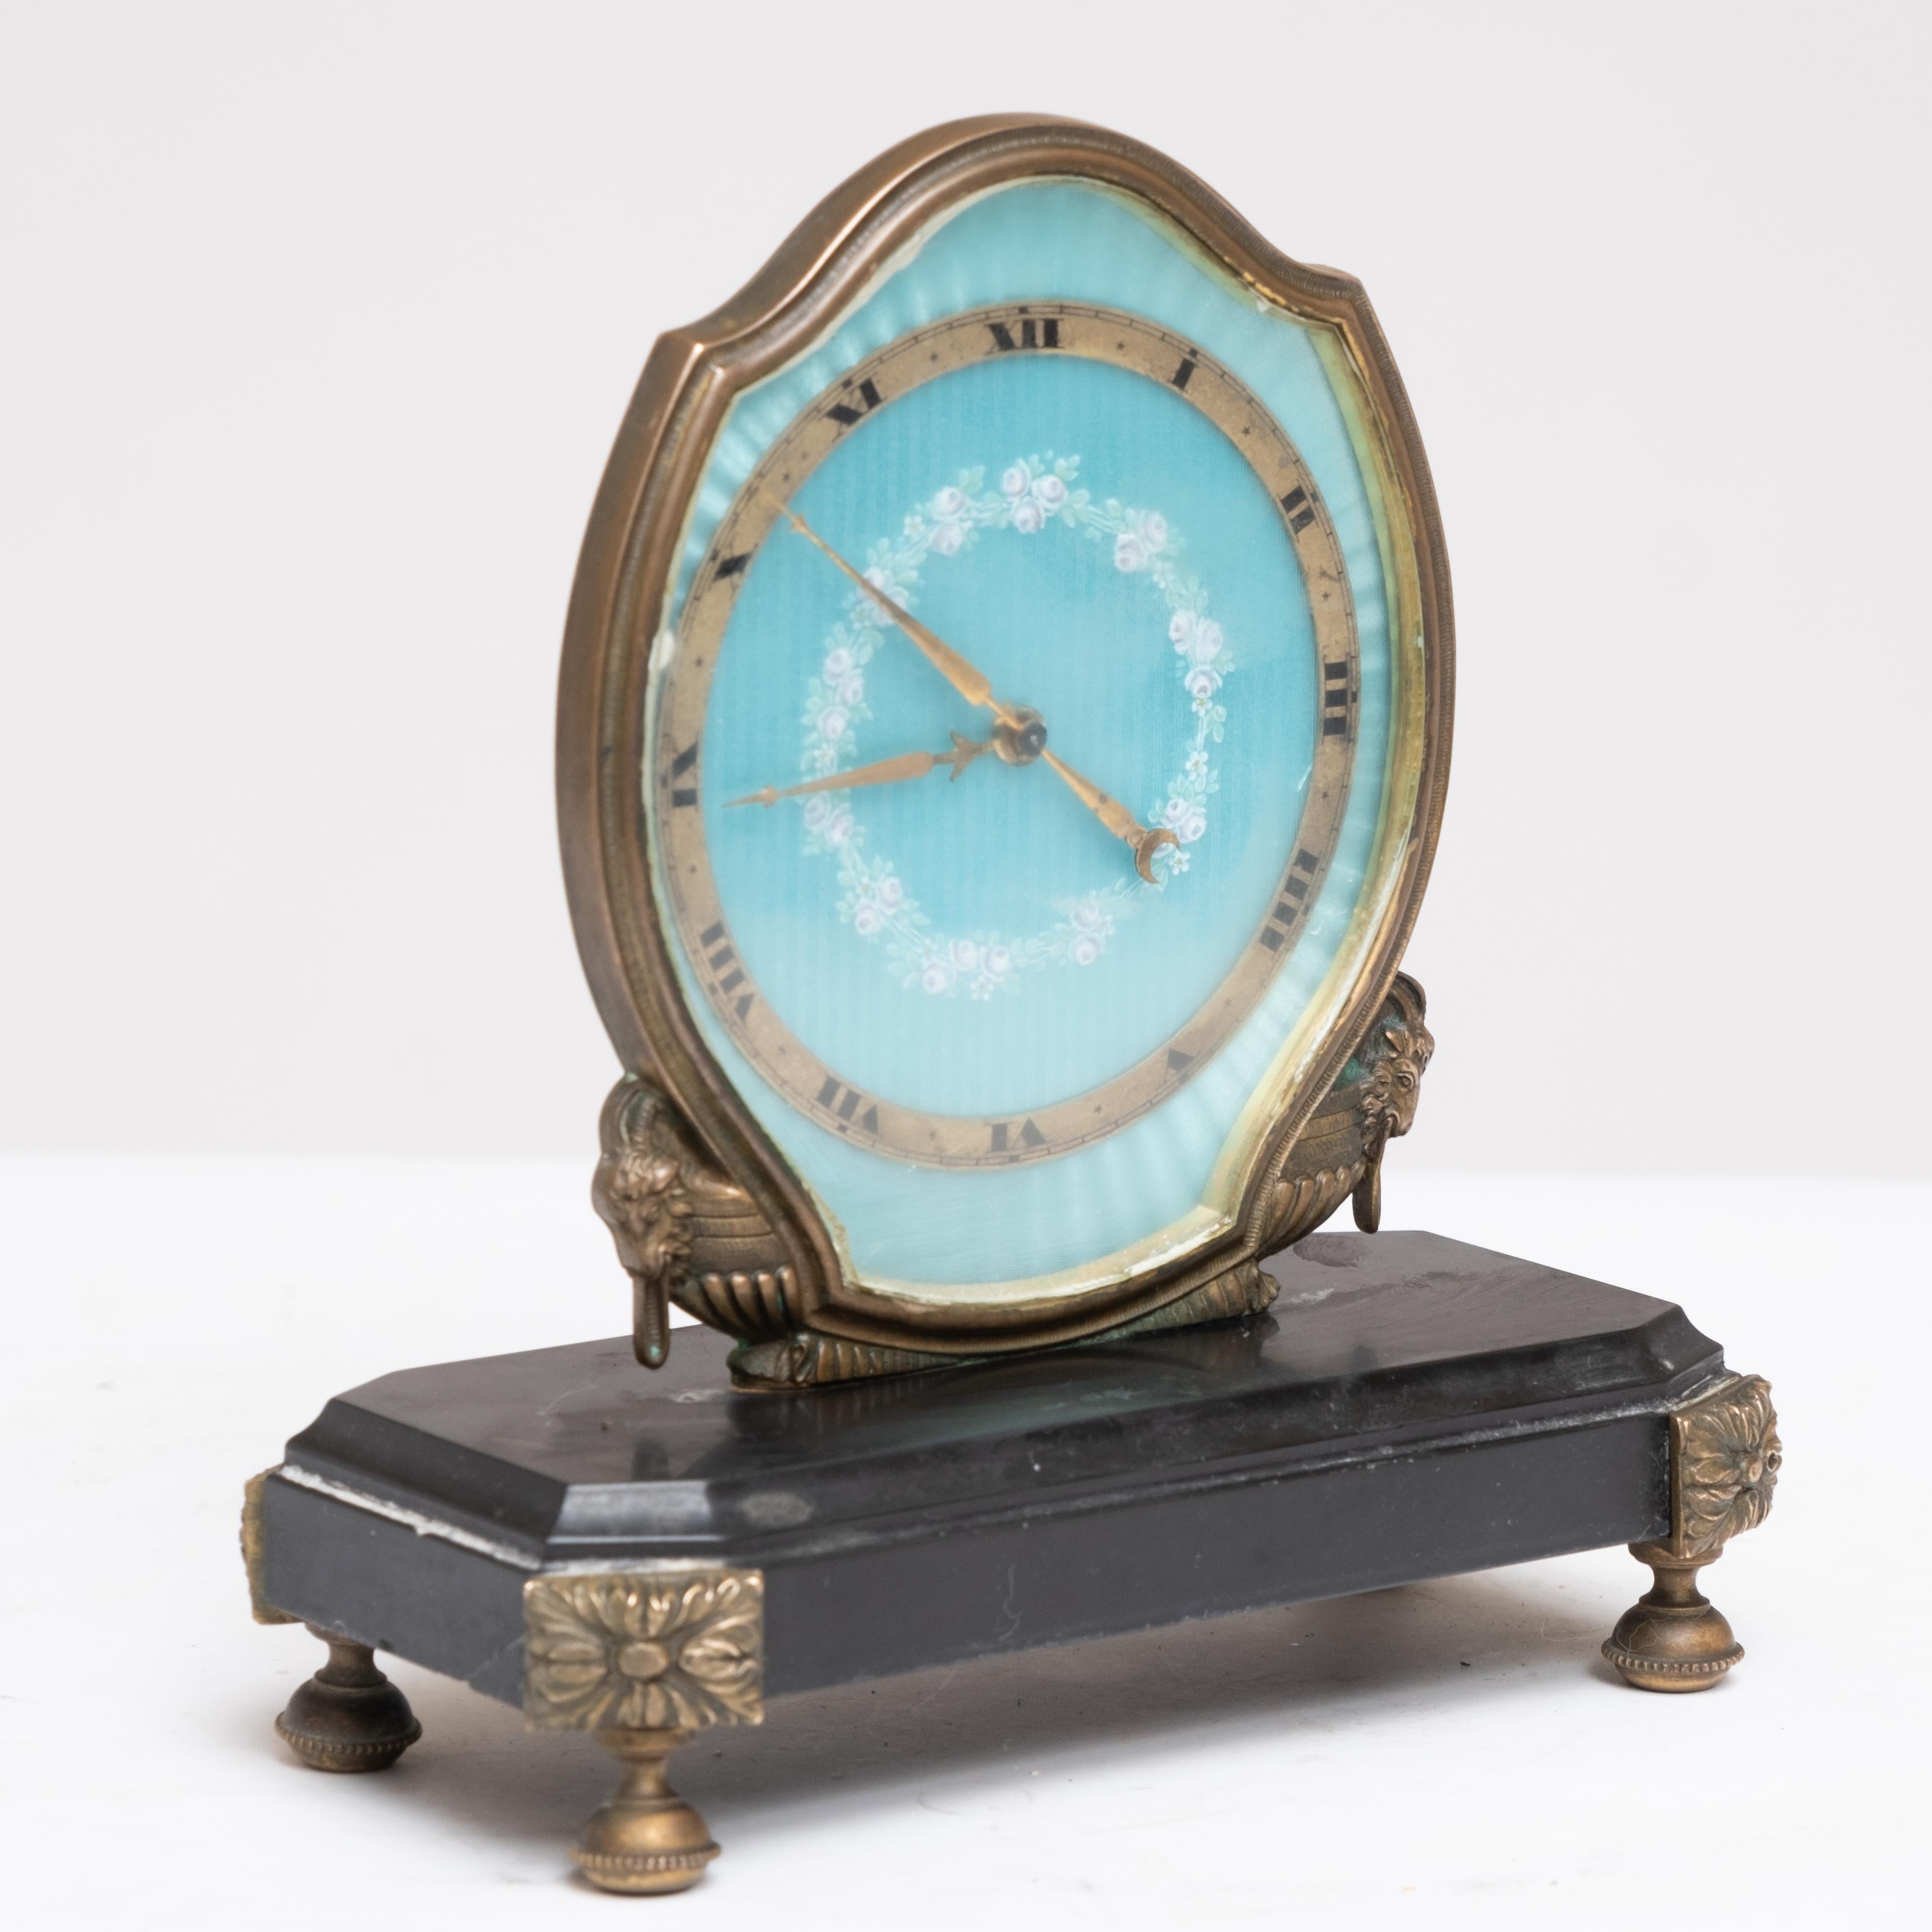 Art Deco Gubelin Acht-Tage-Tischuhr mit Sonnerie-Glockenspiel, aus der Schweiz zu Beginn des 20. Dieser Zeitmesser hat ein hellblau guillochiertes Zifferblatt, das mit rosa und grünen Blumendarstellungen emailliert ist. Die Uhr hat Ormolu-Zeiger mit